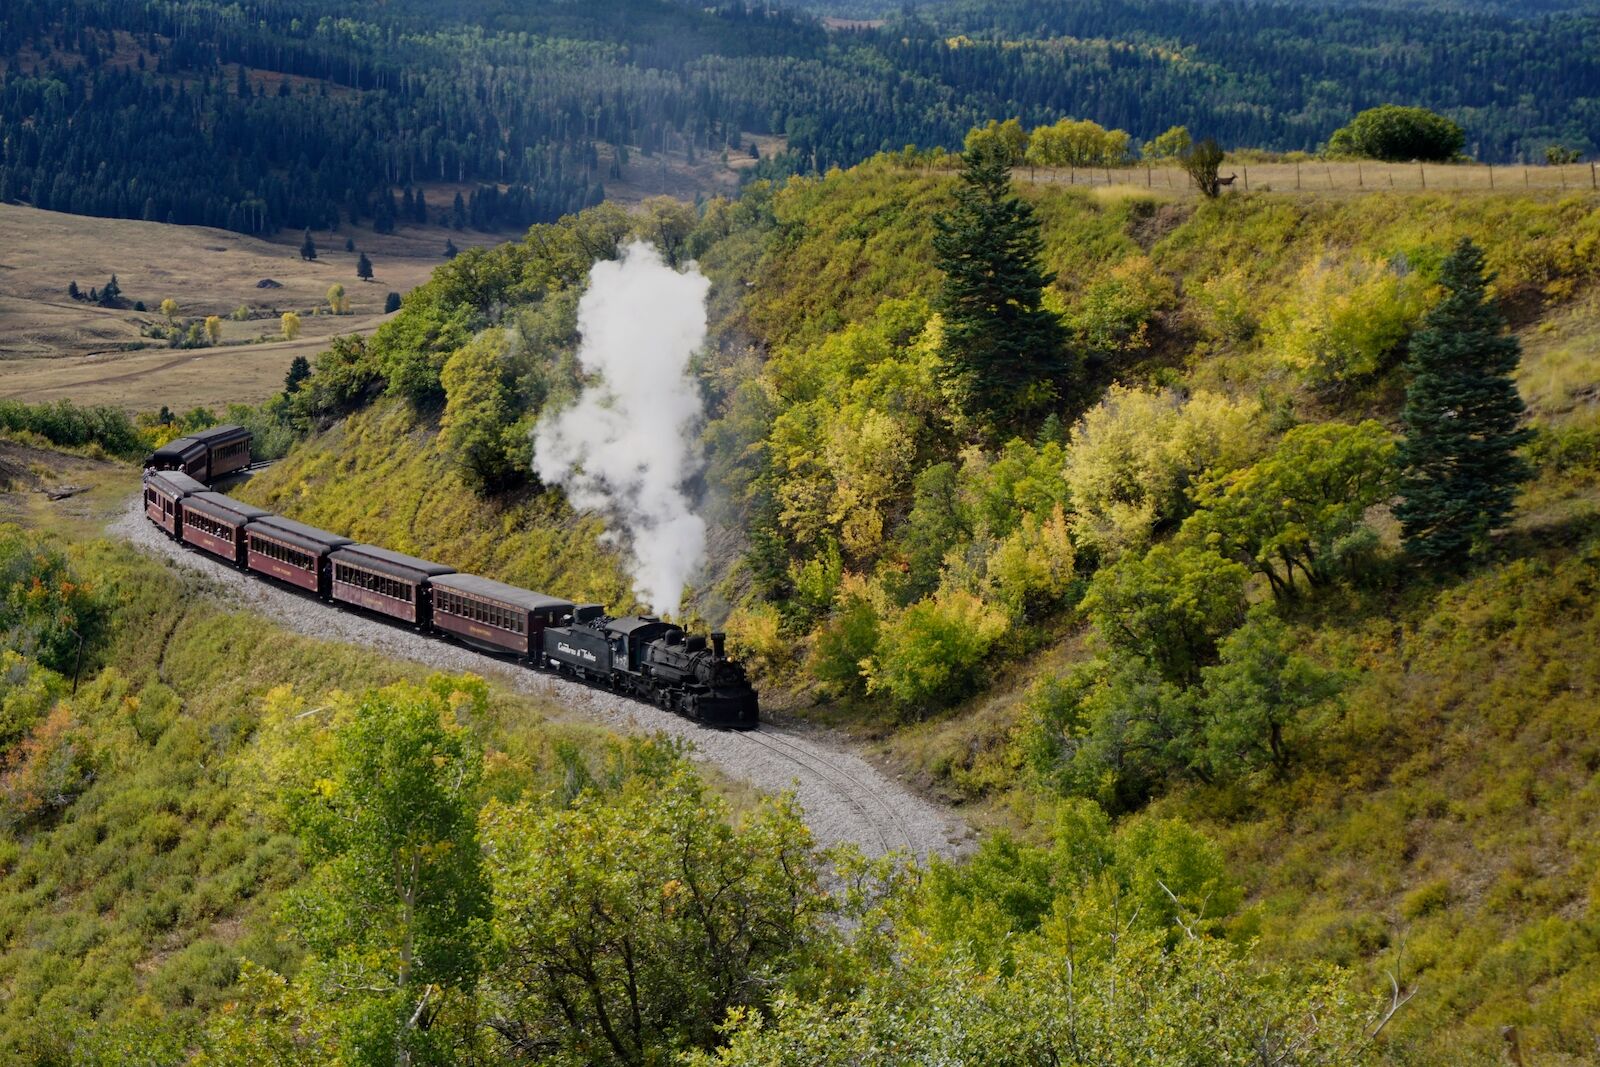 Luxury train travel USA: Cumbres and Toltec Scenic Railroad